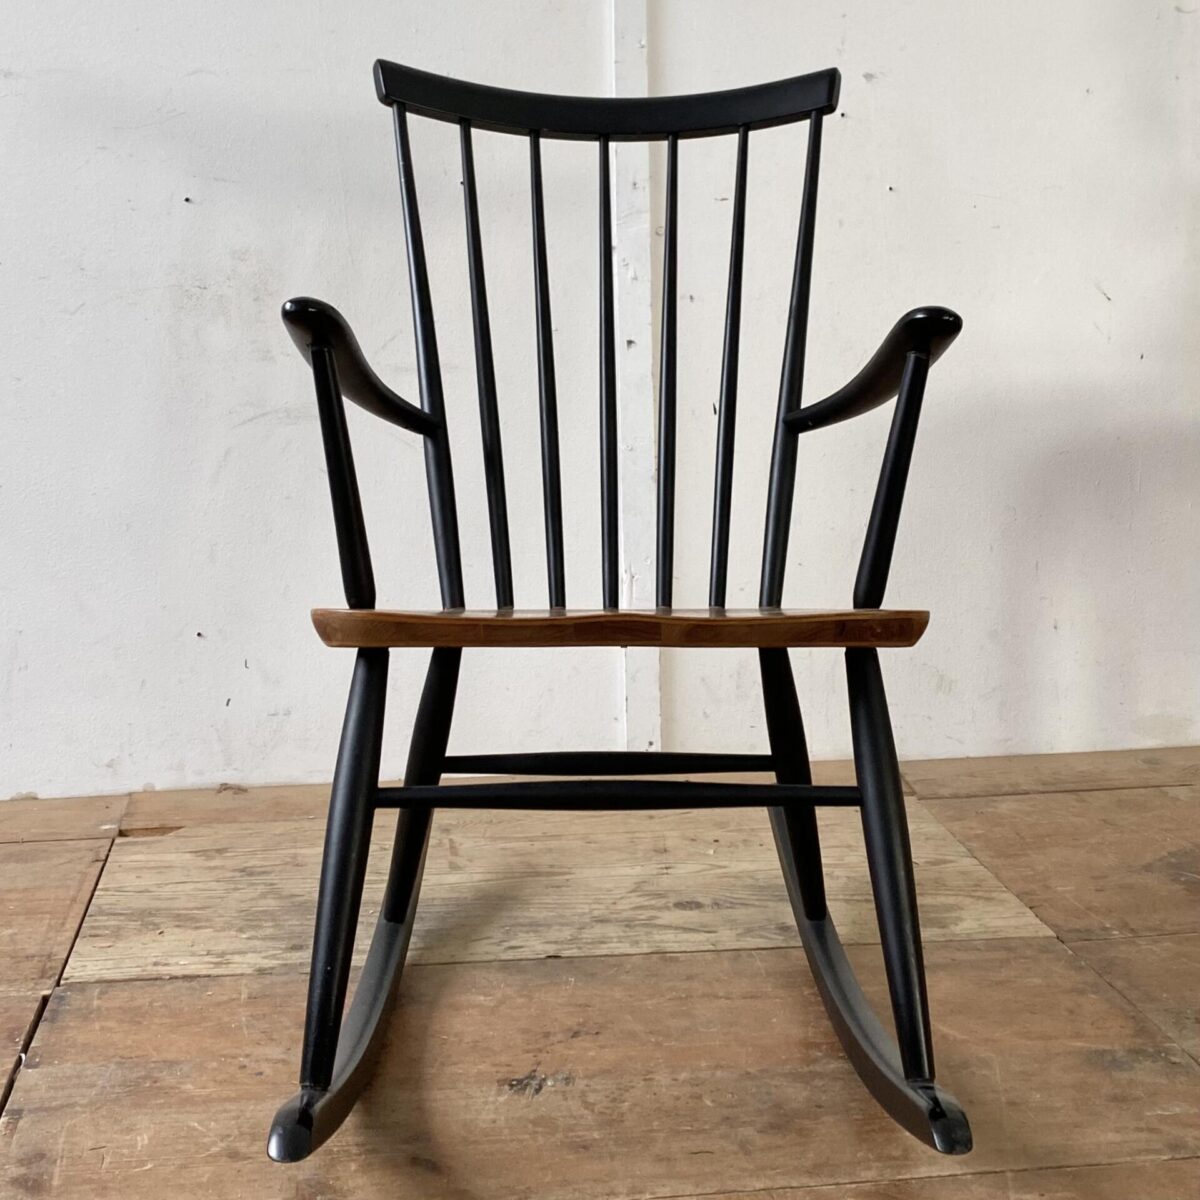 Deuxieme.shop Midcentury Teak Rocking Chair. Schaukelstuhl von Ronald Rainer aus den 50er Jahren. Der Sessel ist in stabilem guten Zustand. Die Sitzfläche ist mit Teakholz furniert, die übrigen Teile aus Buche Vollholz, schwarz lackiert, diverse kleinere Farb Abschürfungen. 